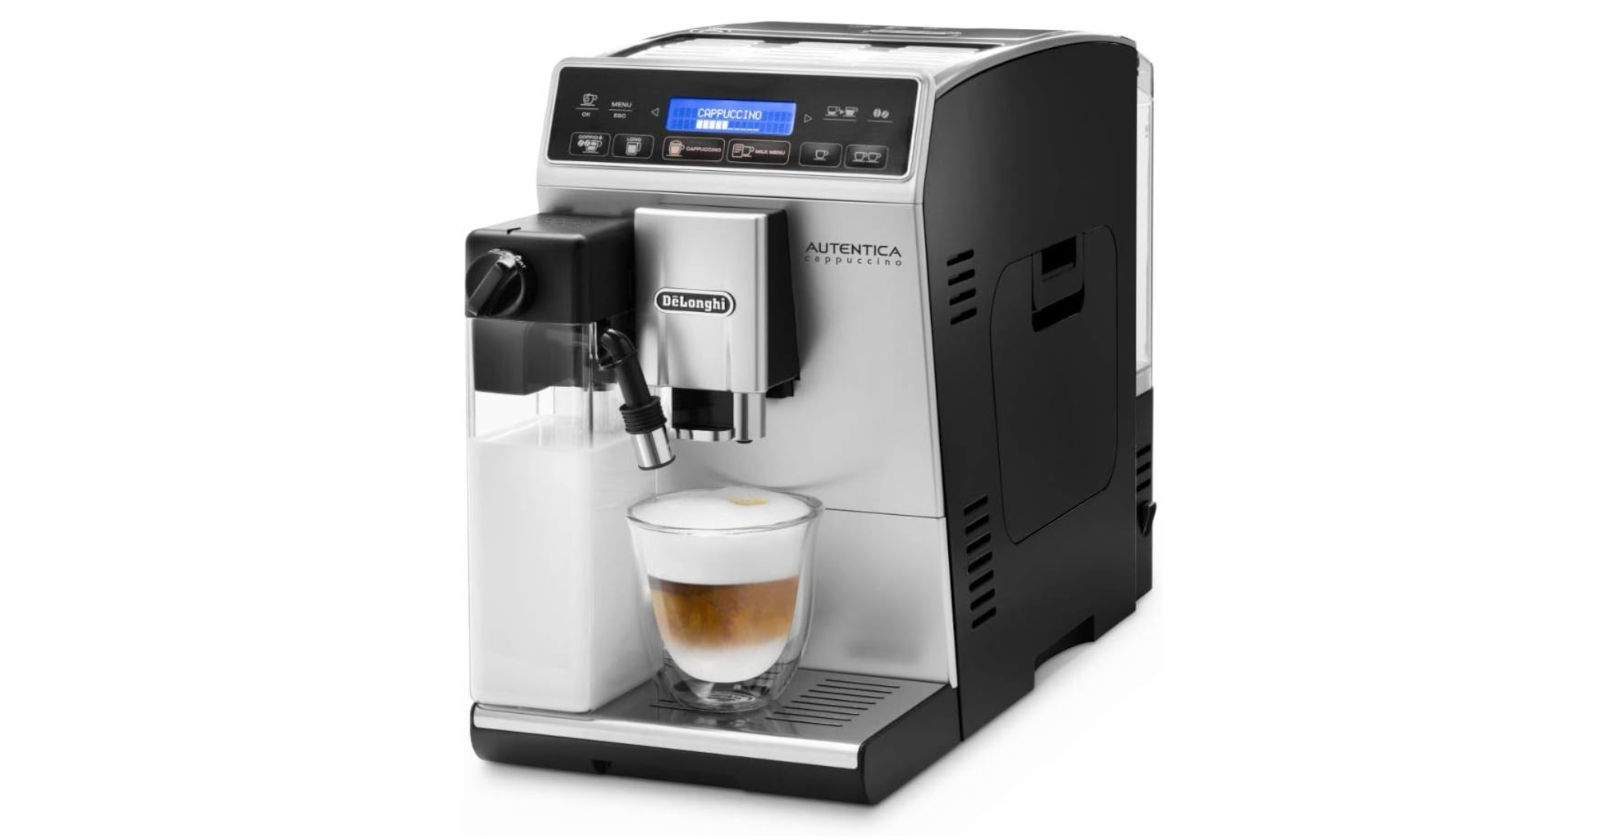 Test Cafetière Delonghi Autentica, Une machine à café à grain compacte avec une multitude de réglages possibles